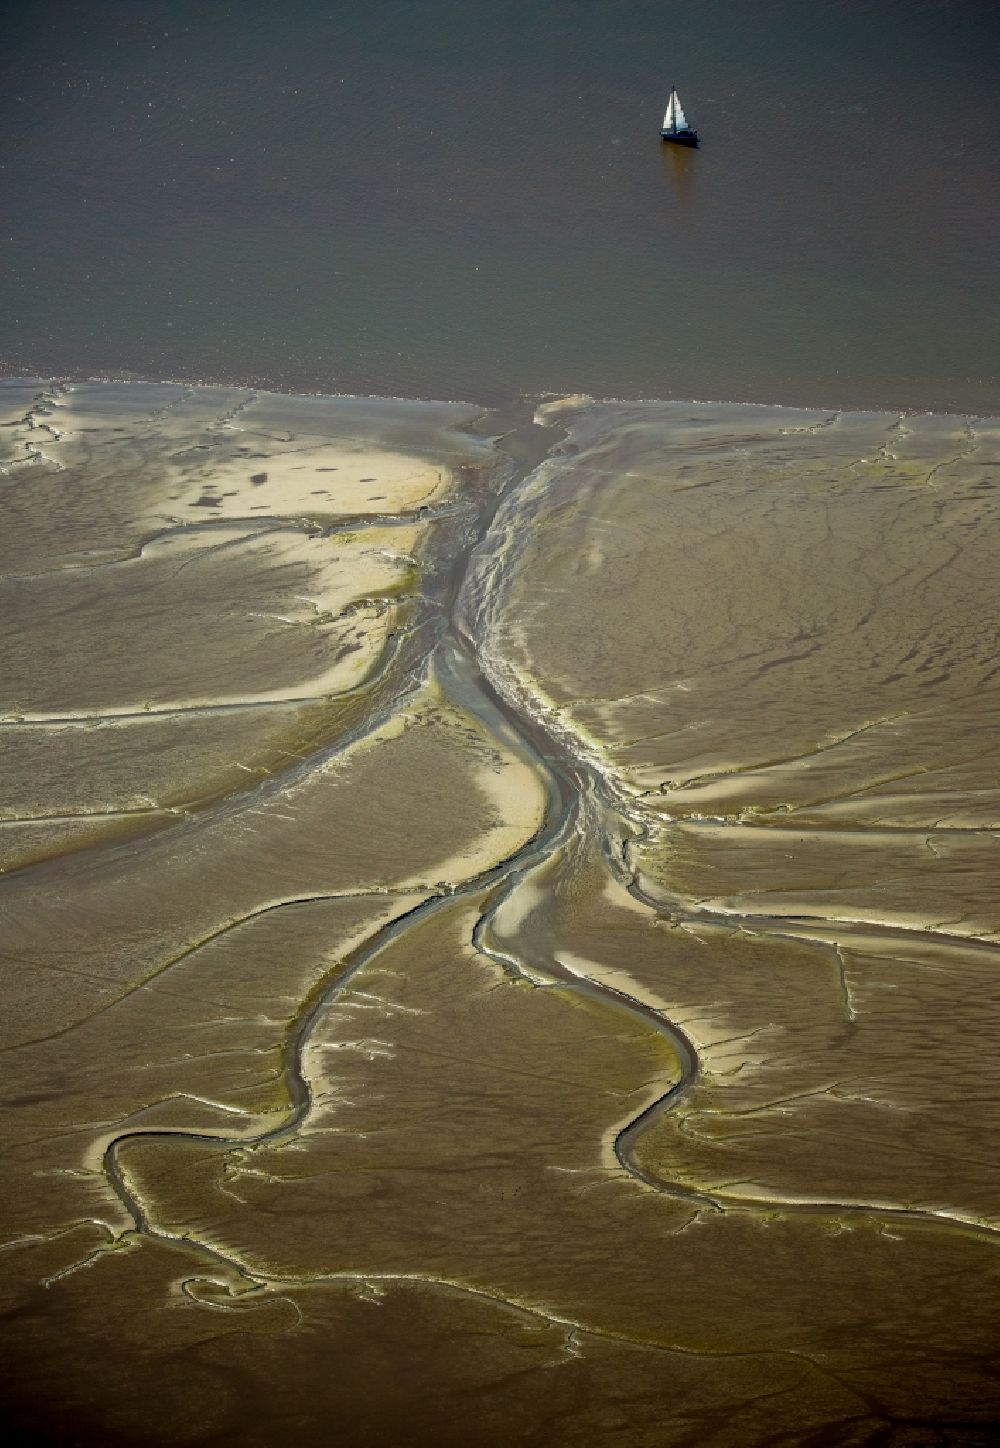 Luftaufnahme Wedel - Wattenmeer - artige Sandaufspülungen am Ufer der Elbe bei Wedel im Bundesland Schleswig-Holstein